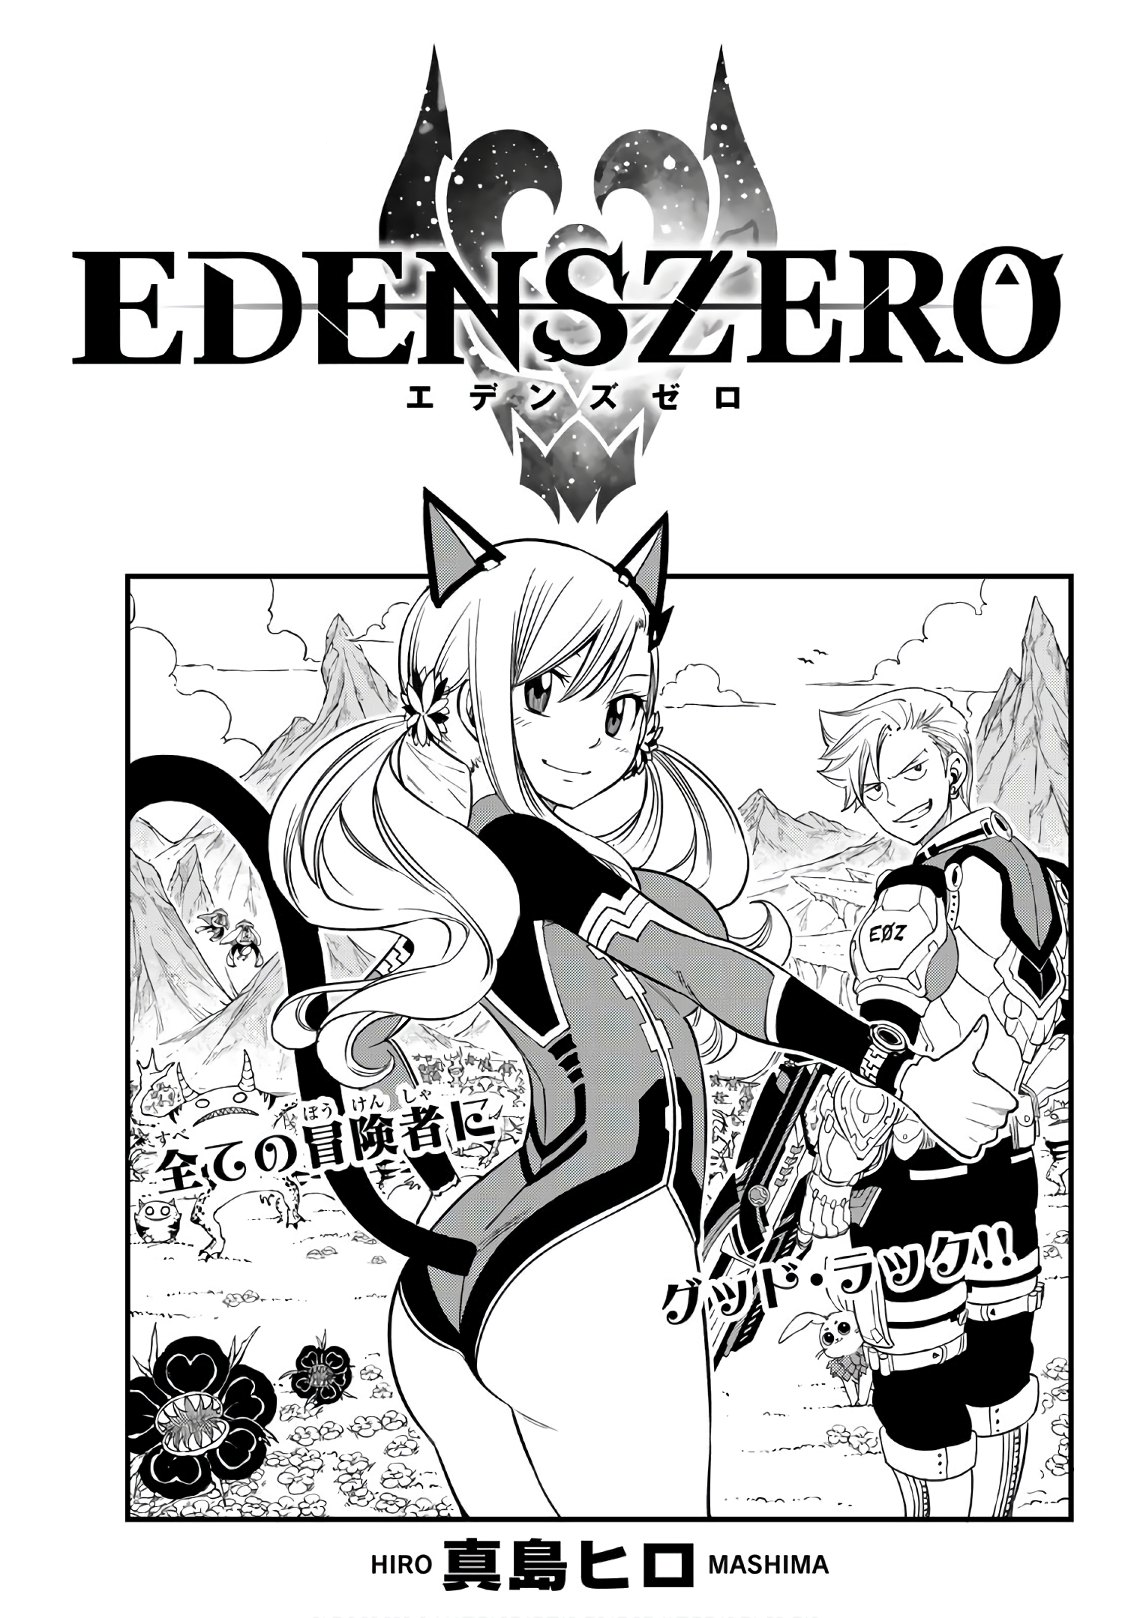 Xiaomei, Wiki Edens Zero